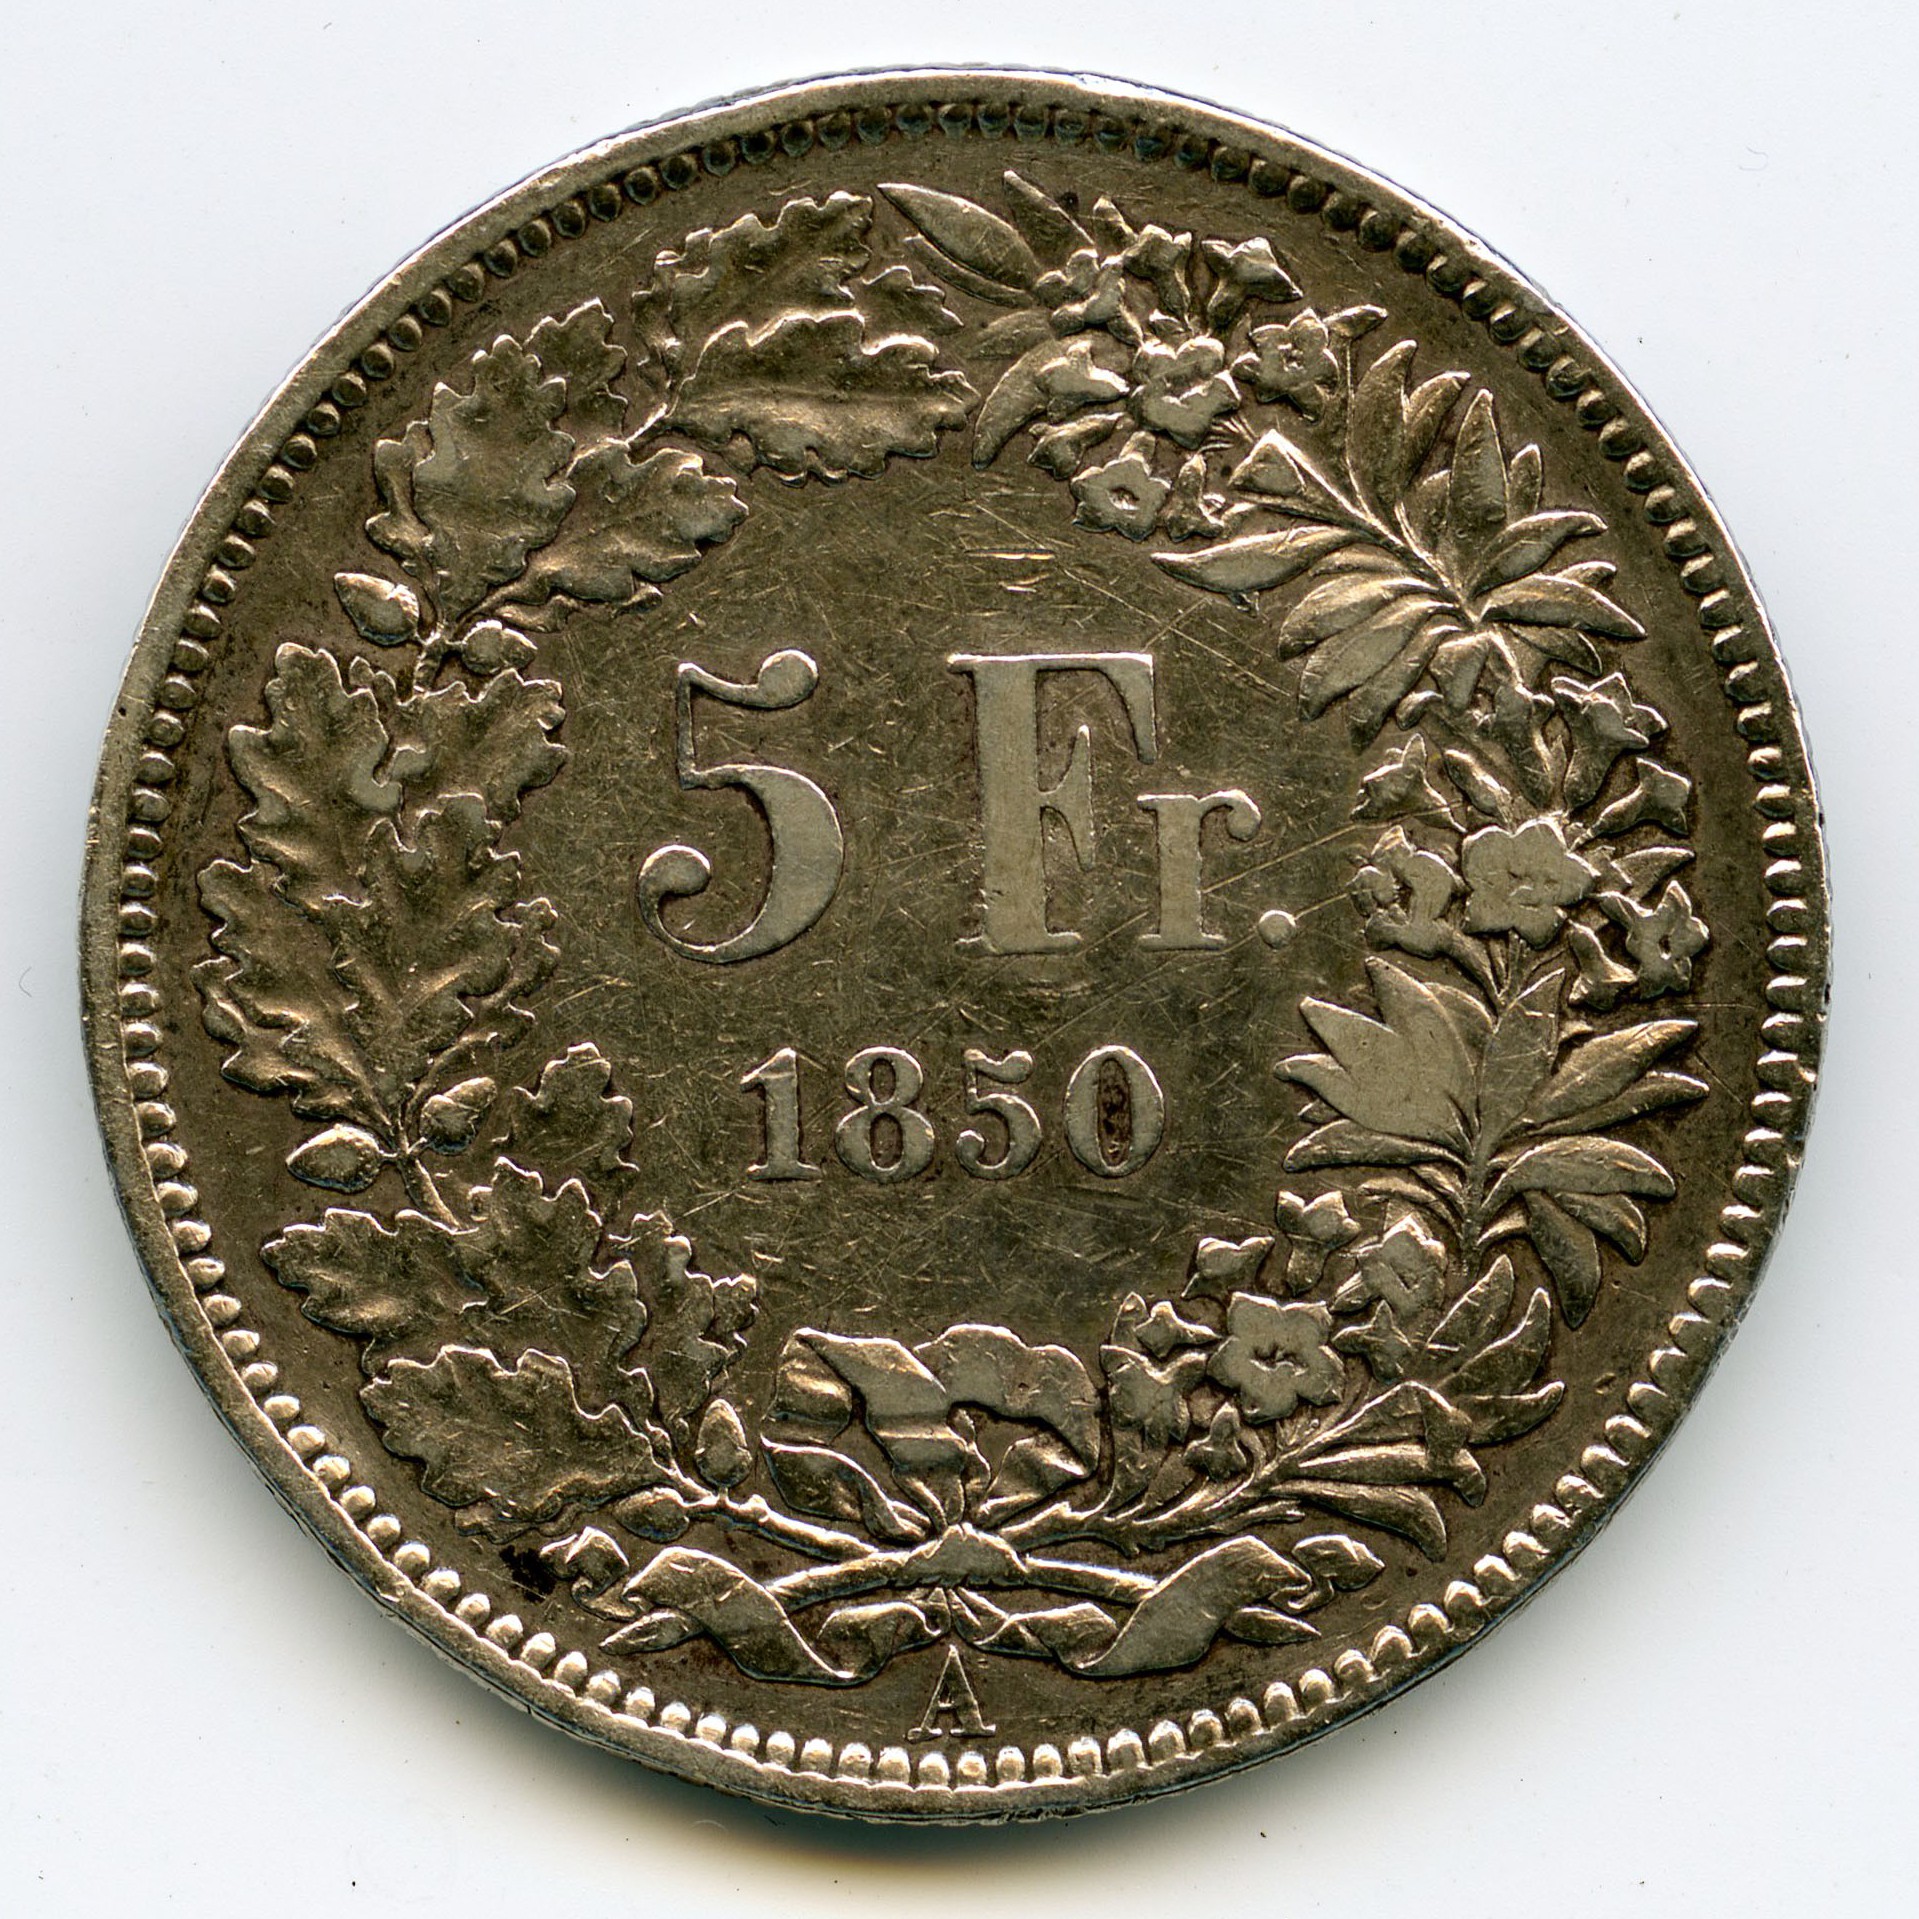 Suisse - 5 Francs - 1850 A revers